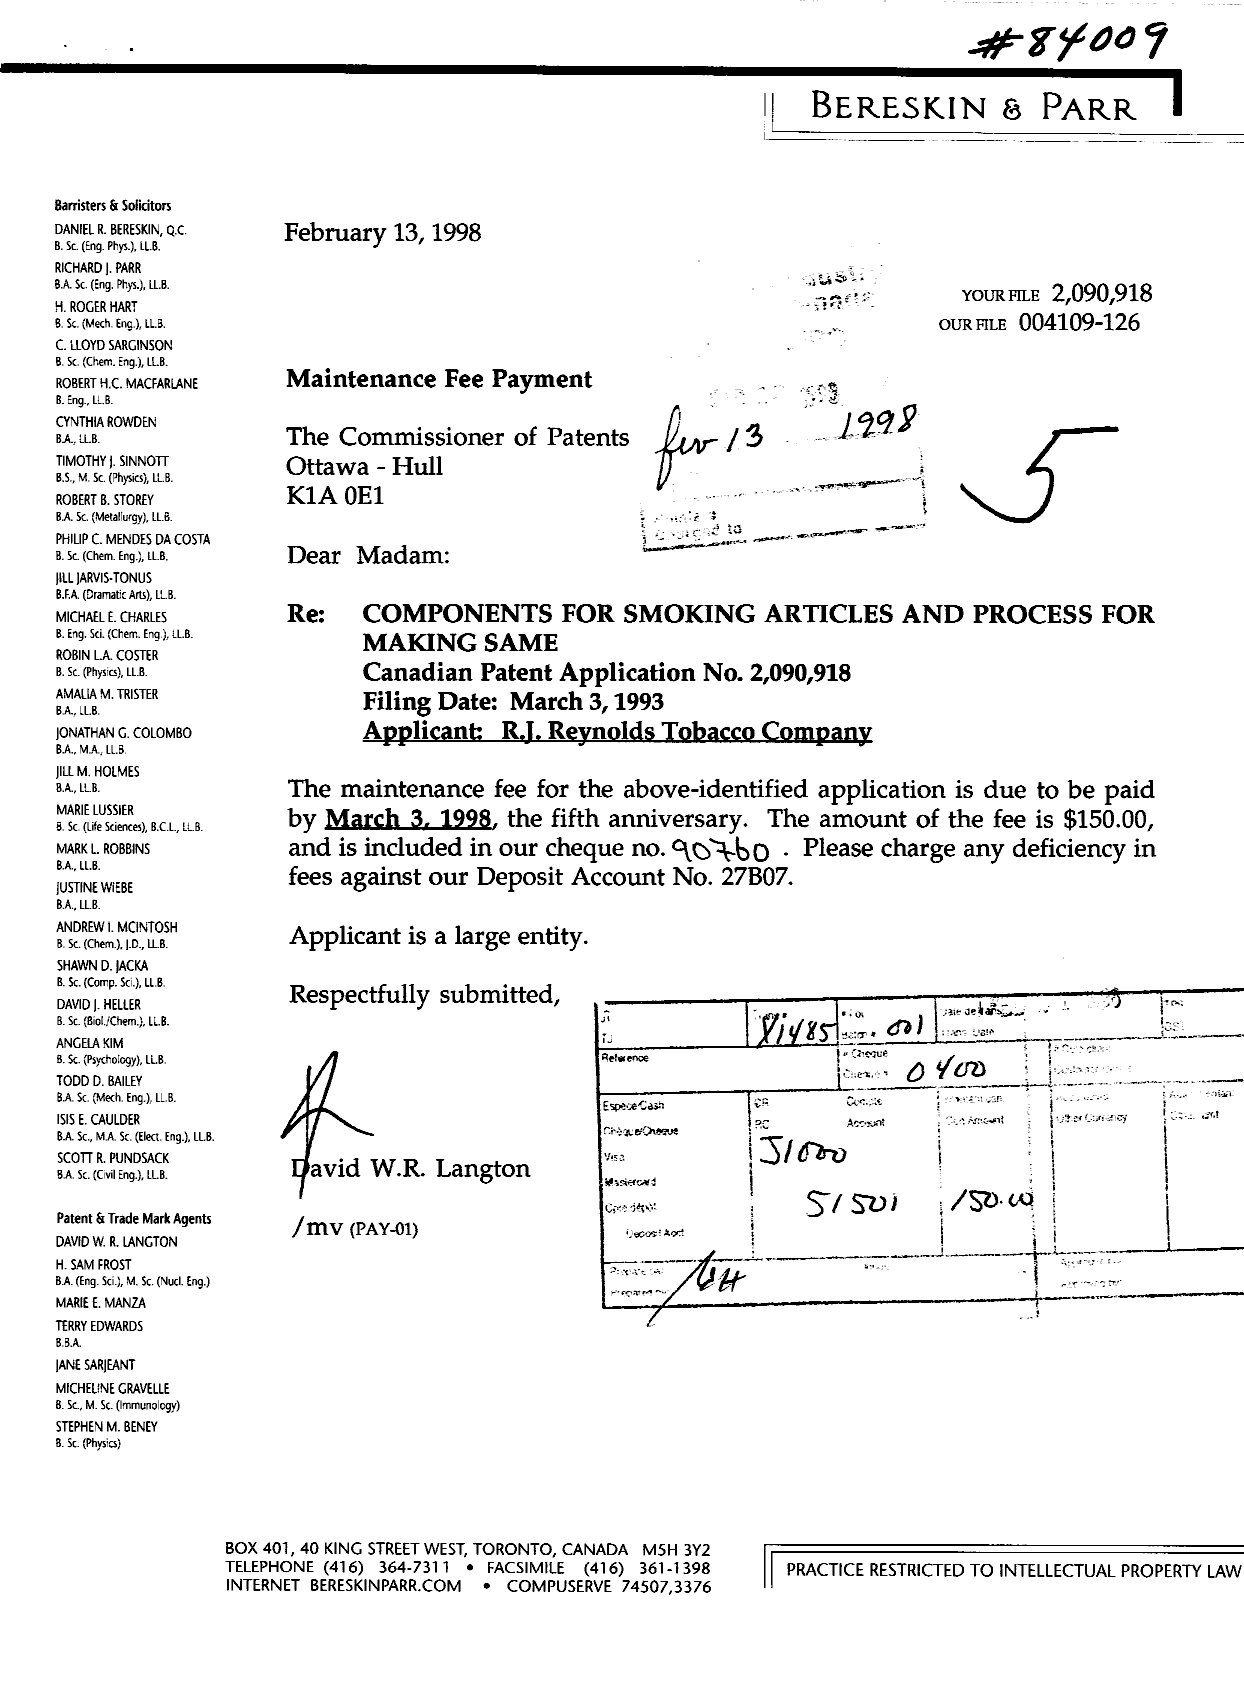 Document de brevet canadien 2090918. Taxes 19980213. Image 1 de 1